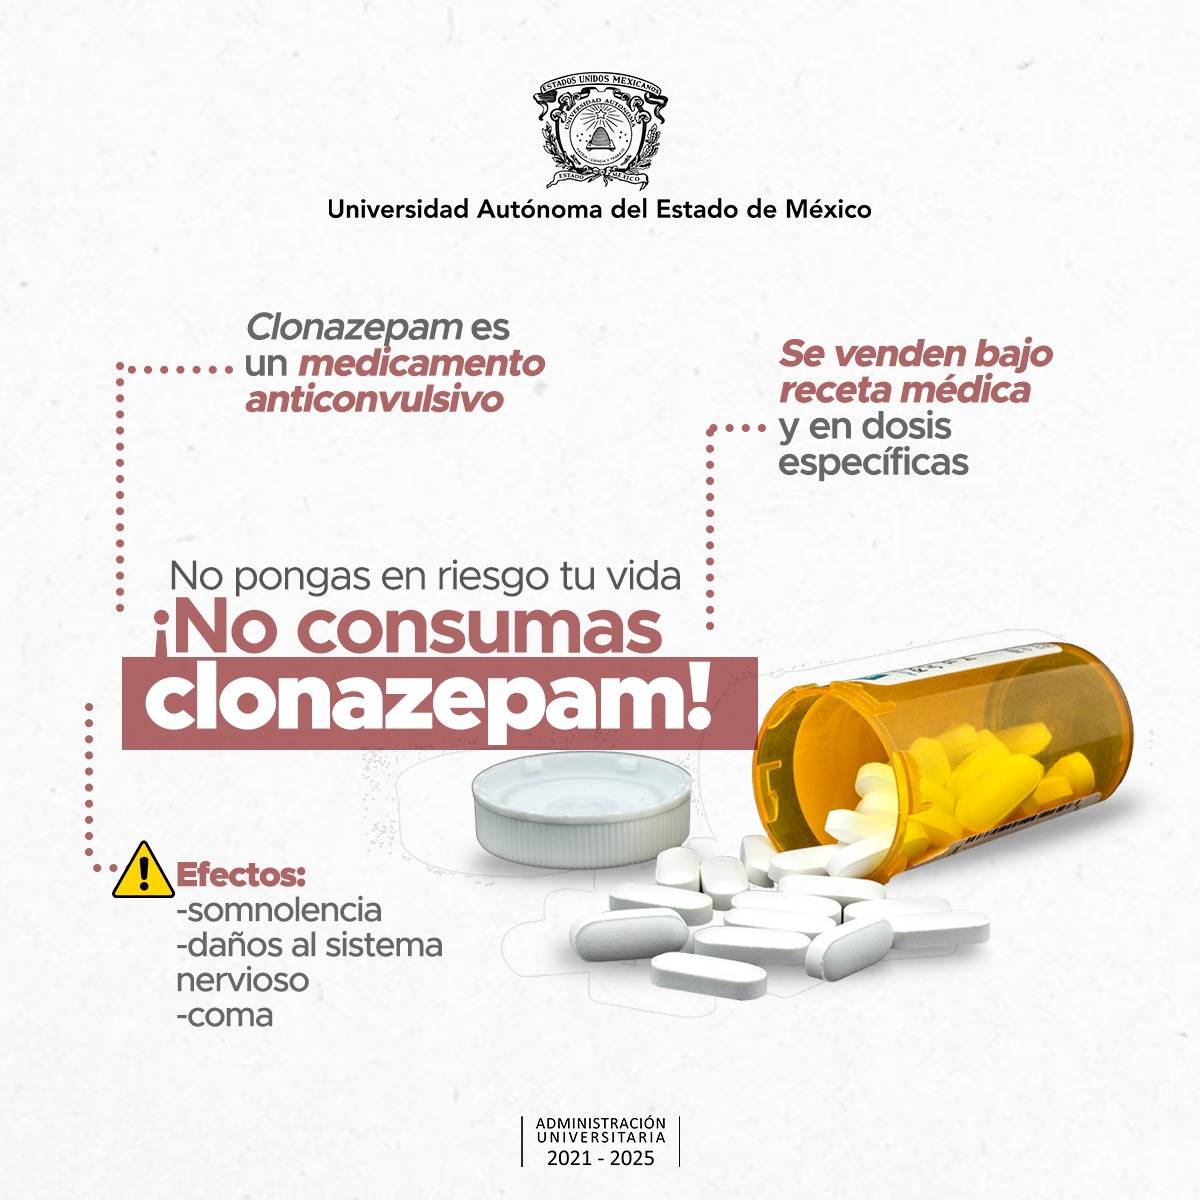 Consumo de clonazepam sin prescripción médica pone en riesgo la vida |  Razona, Actúa Noticias